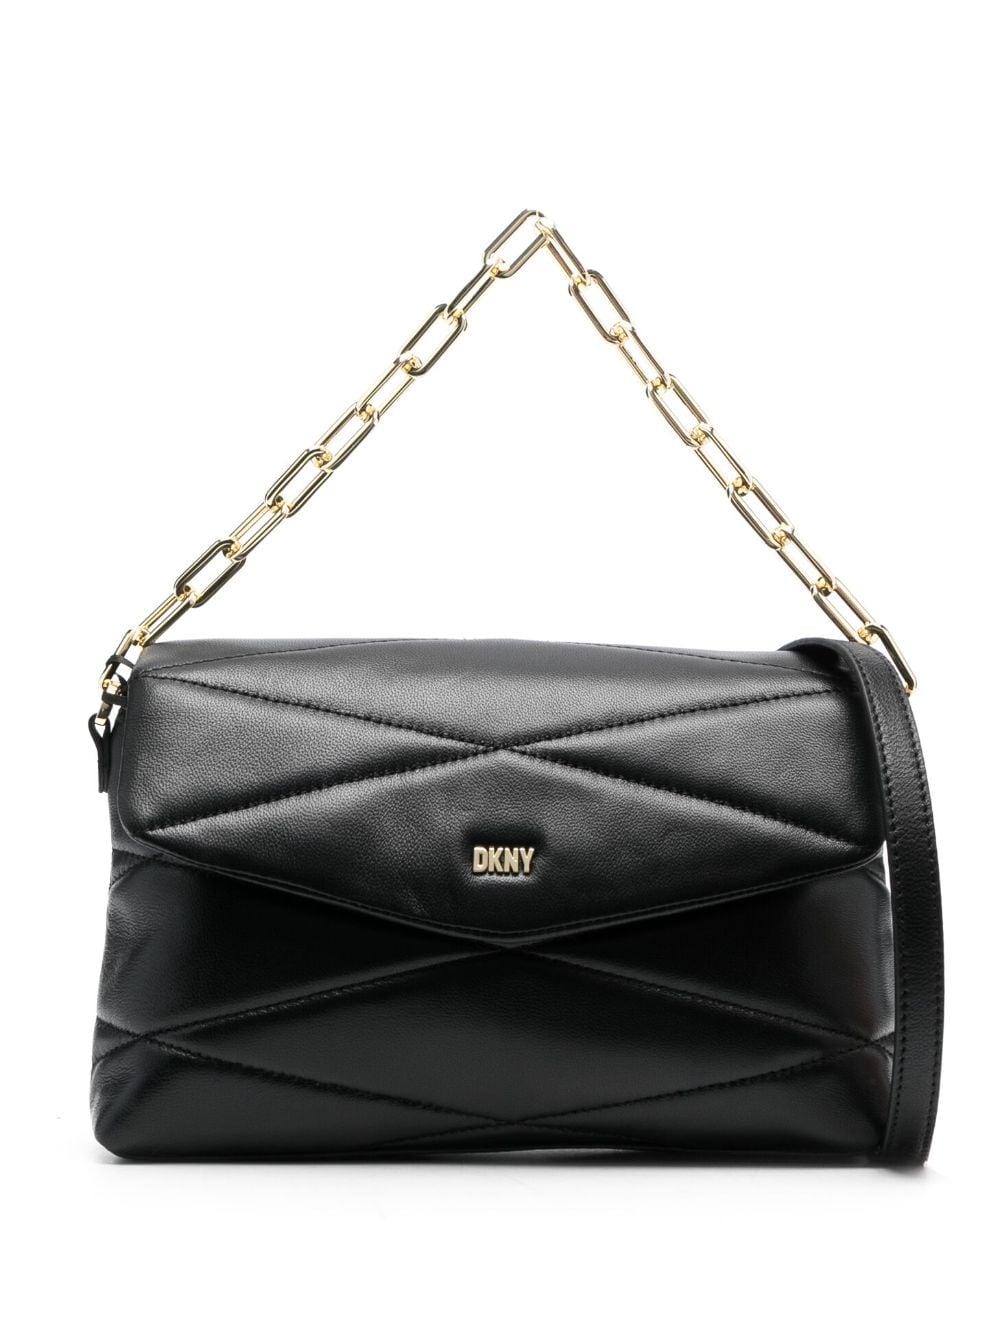 DKNY quilted leather shoulder bag - Black von DKNY